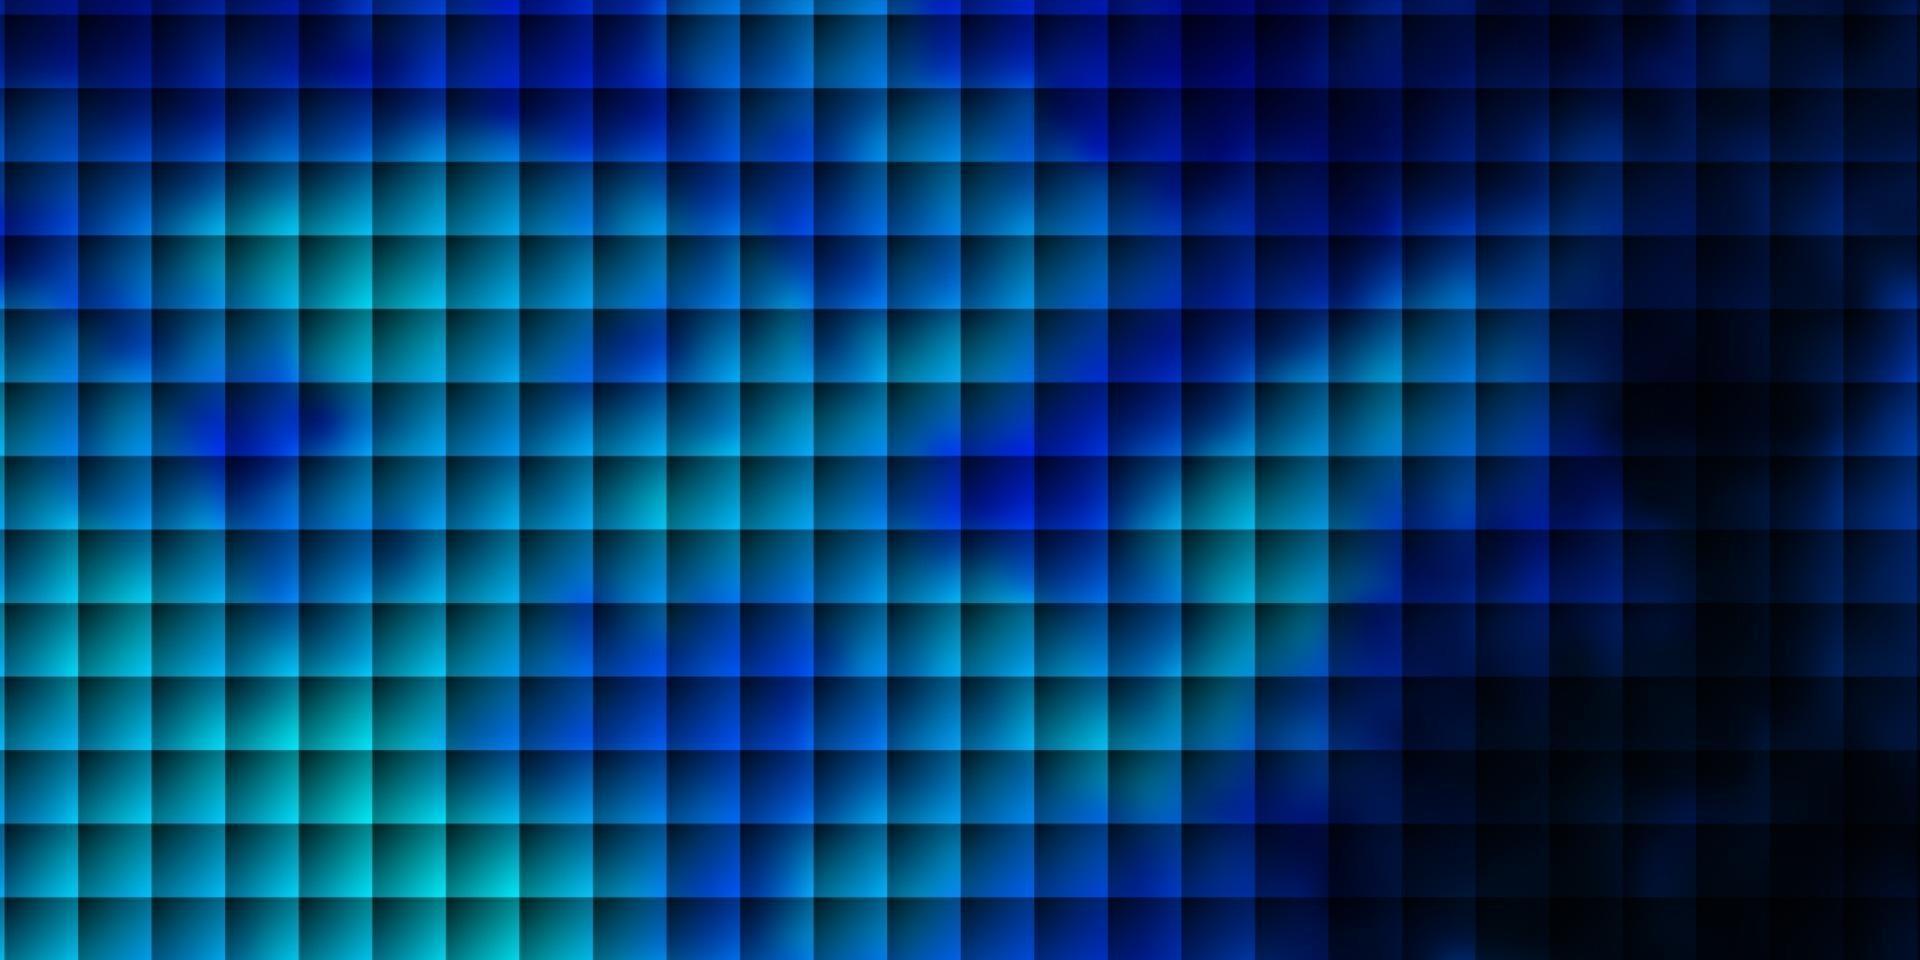 toile de fond de vecteur bleu foncé avec des rectangles.